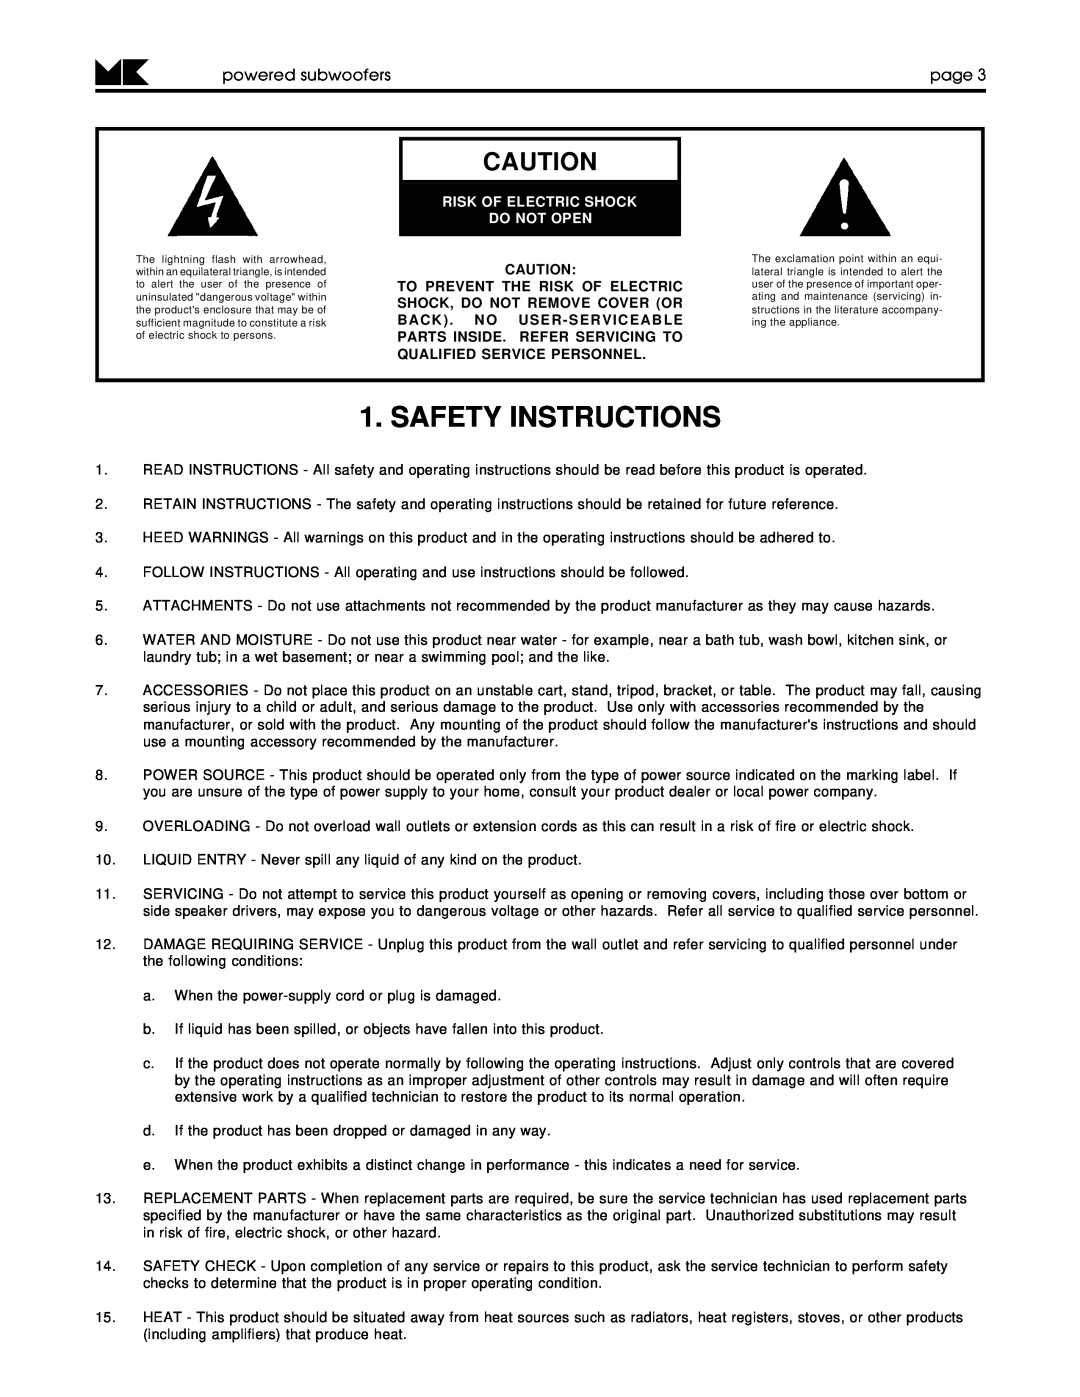 MK Sound VX-7 MK II, V-75 MK II, V-125 Safety Instructions, powered subwooferspage, Risk Of Electric Shock Do Not Open 